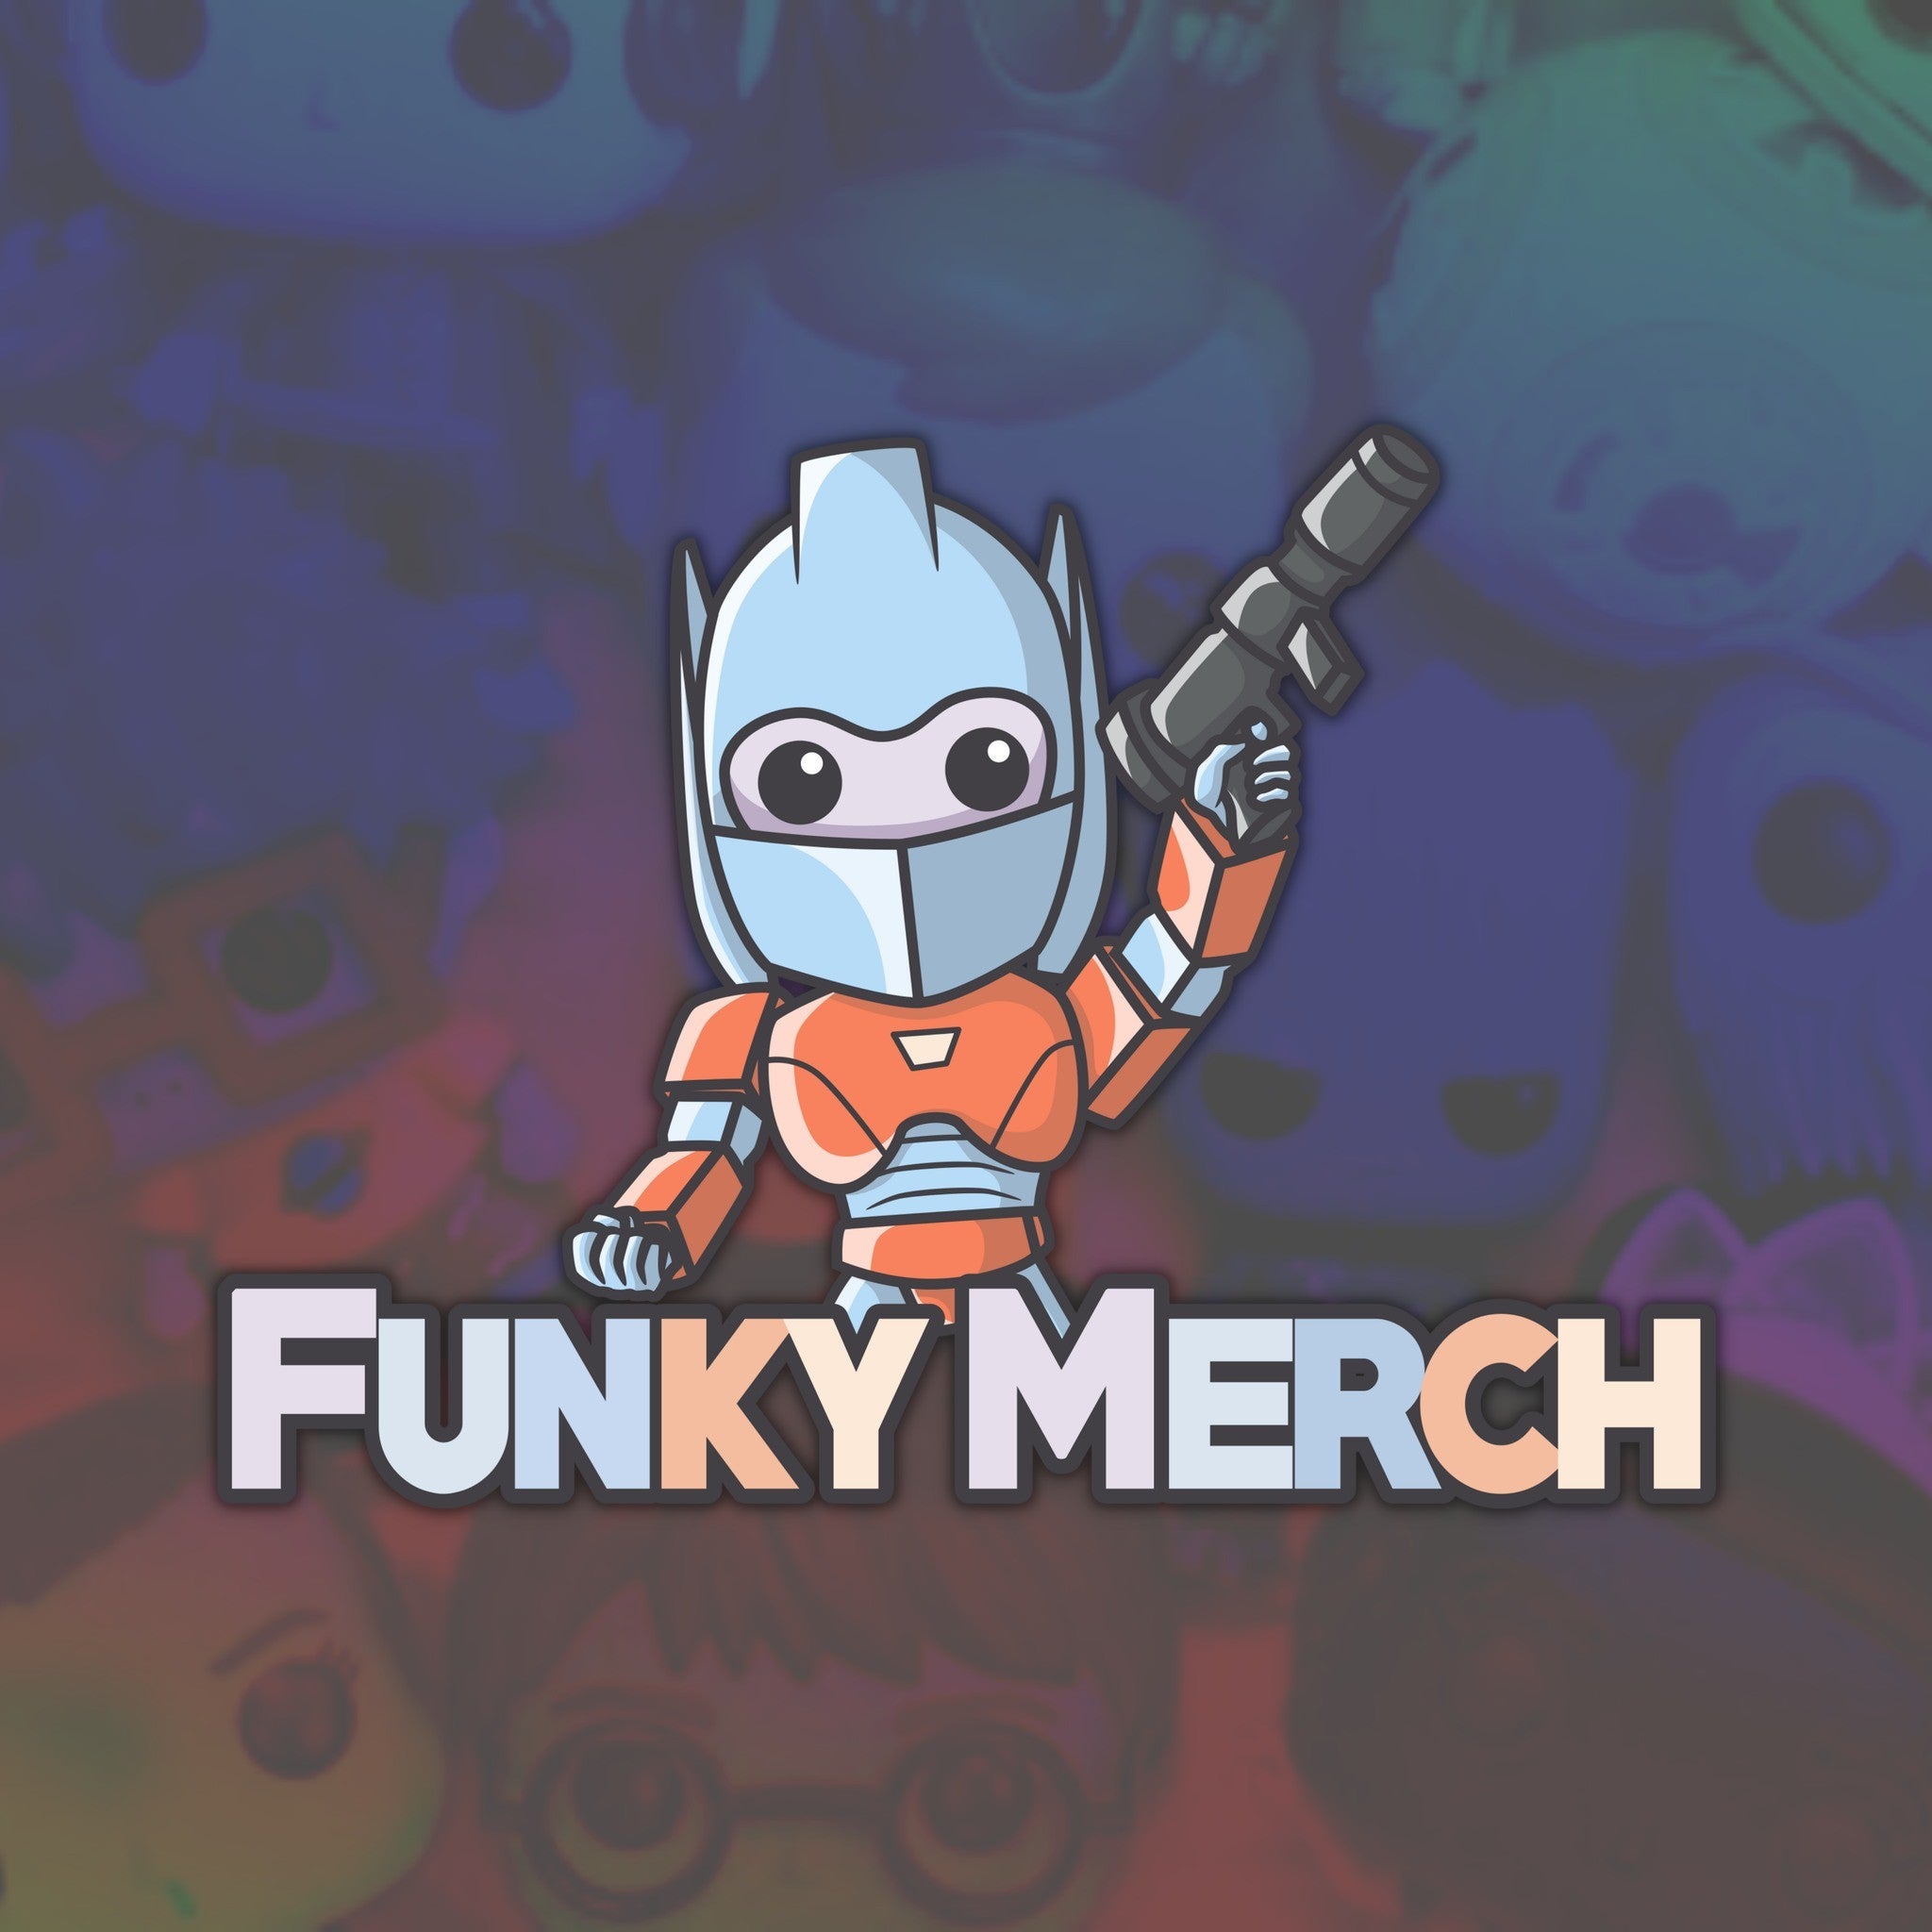 Funky Merch on eBay